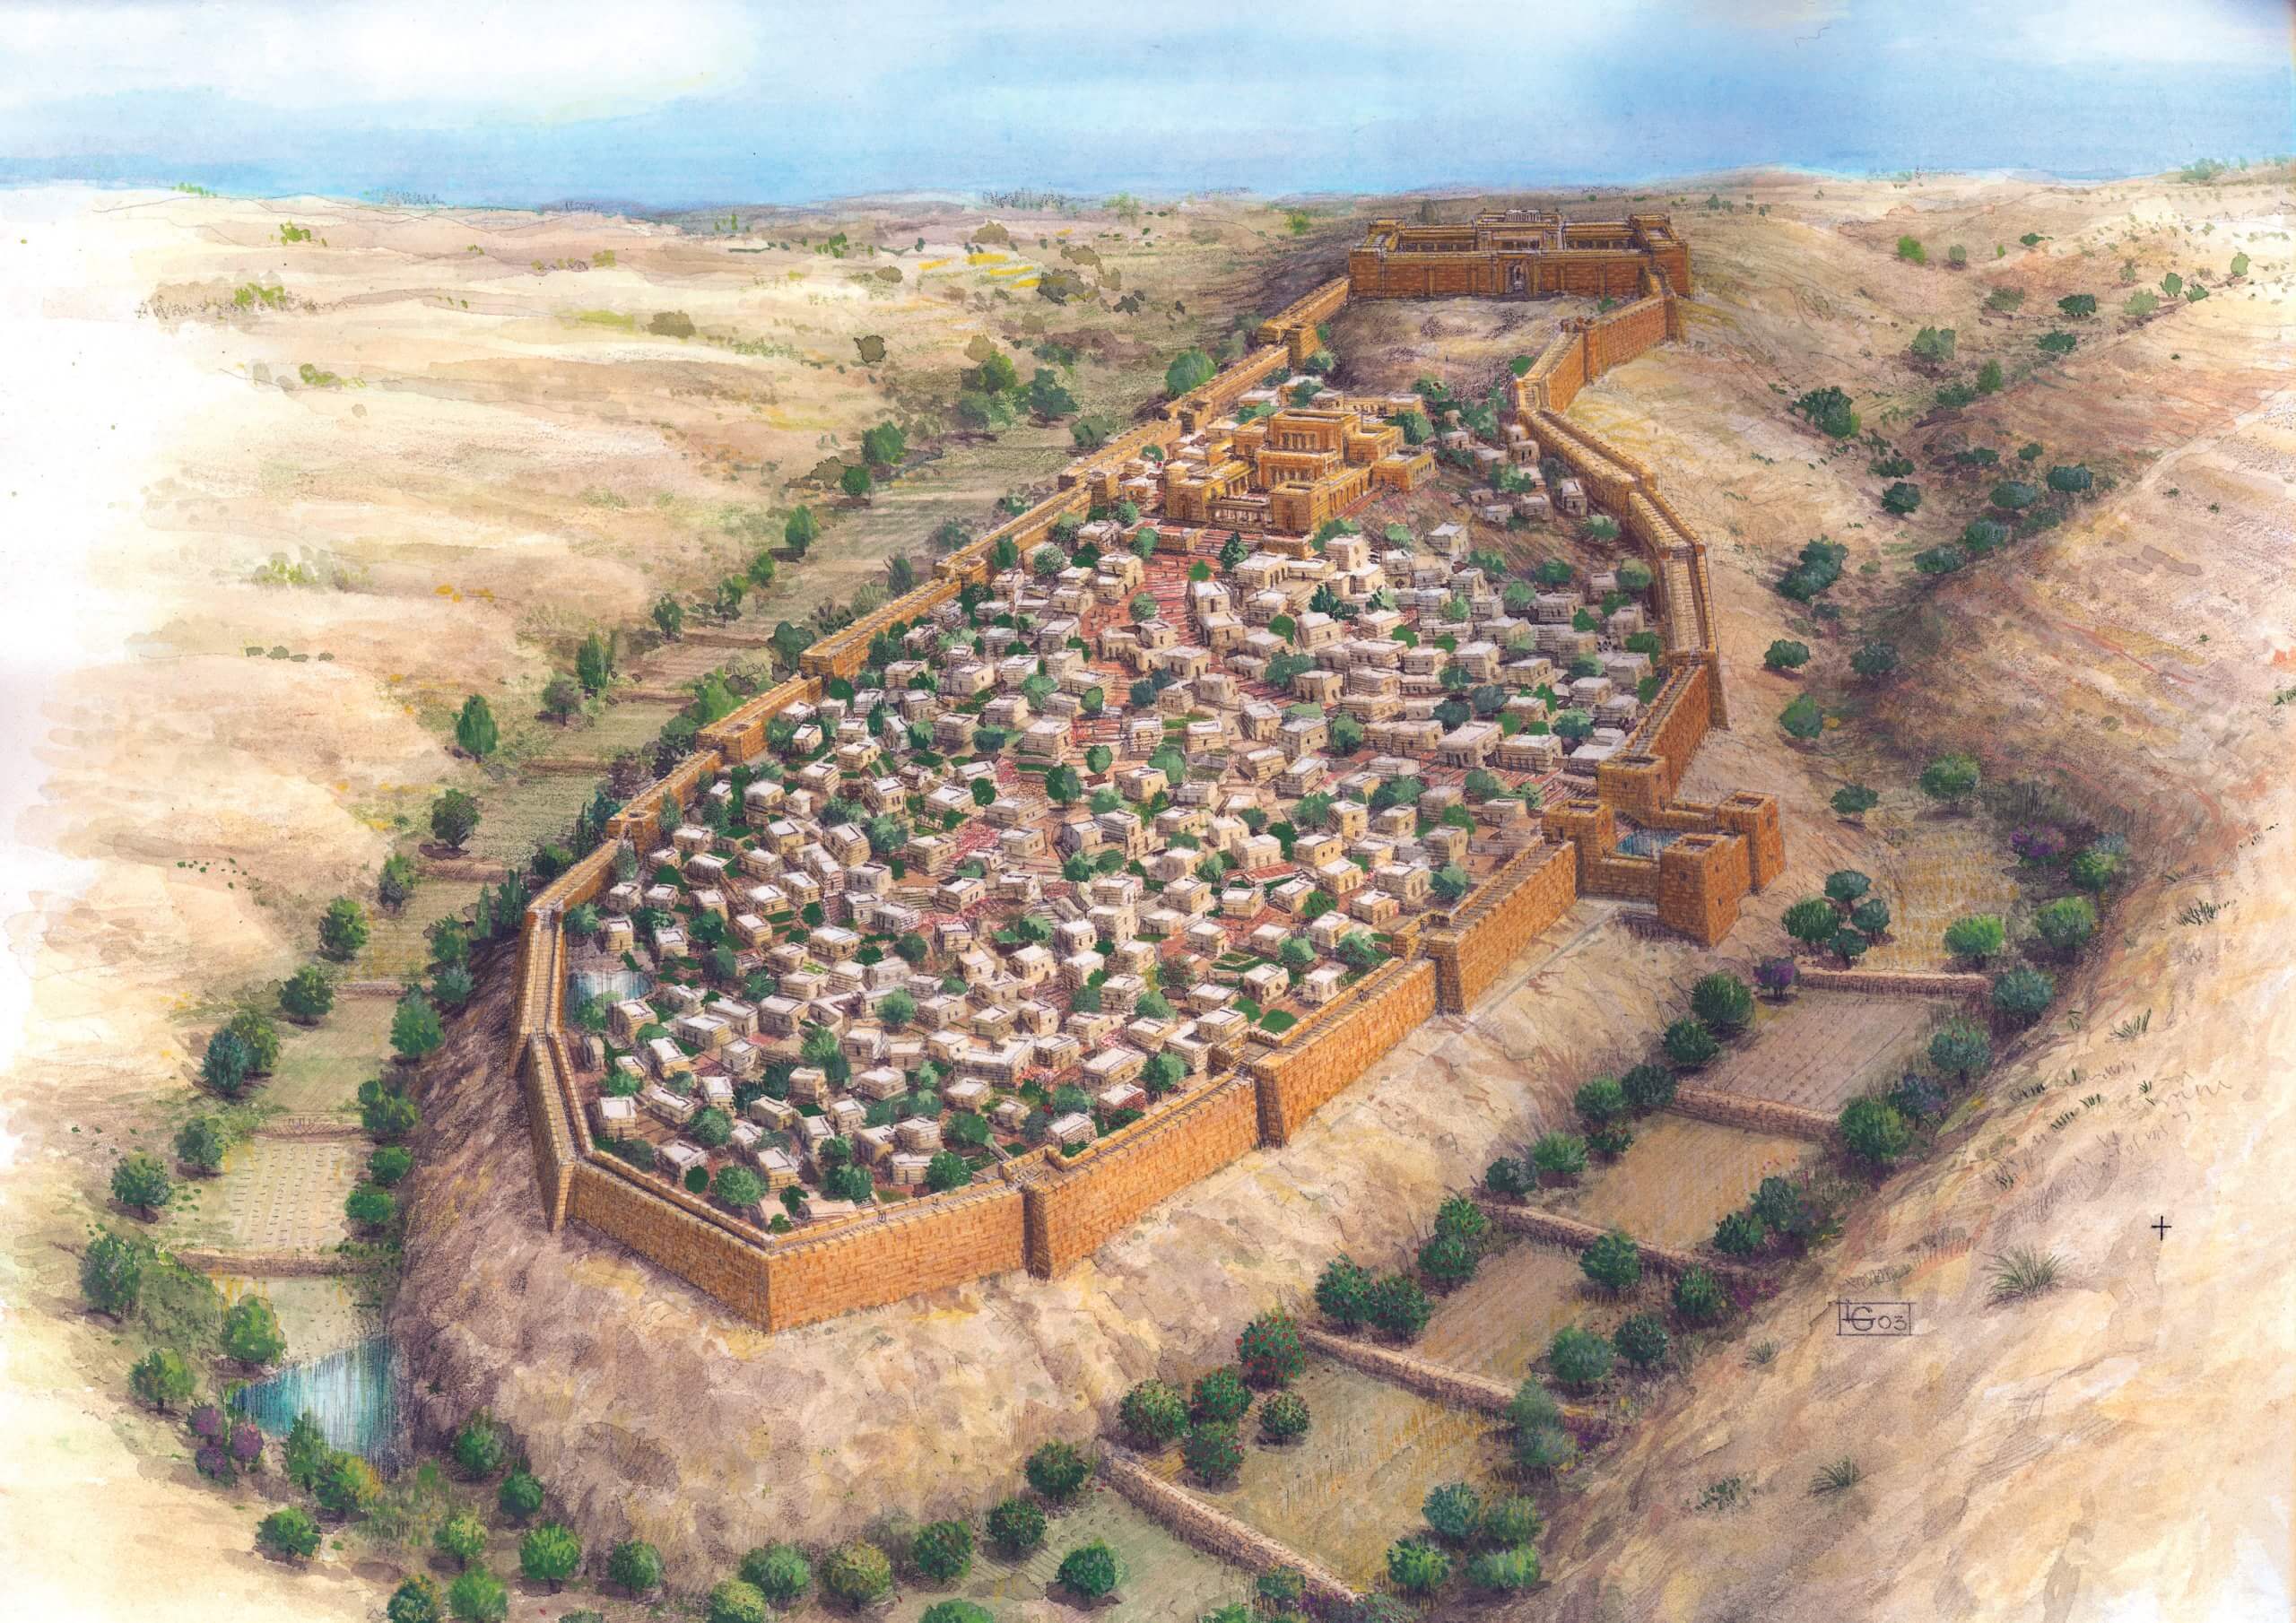 توضيح - أسوار مدينة القدس في أيام الهيكل الأول - ليوناردو جورفيتز - أرشيف مدينة داود